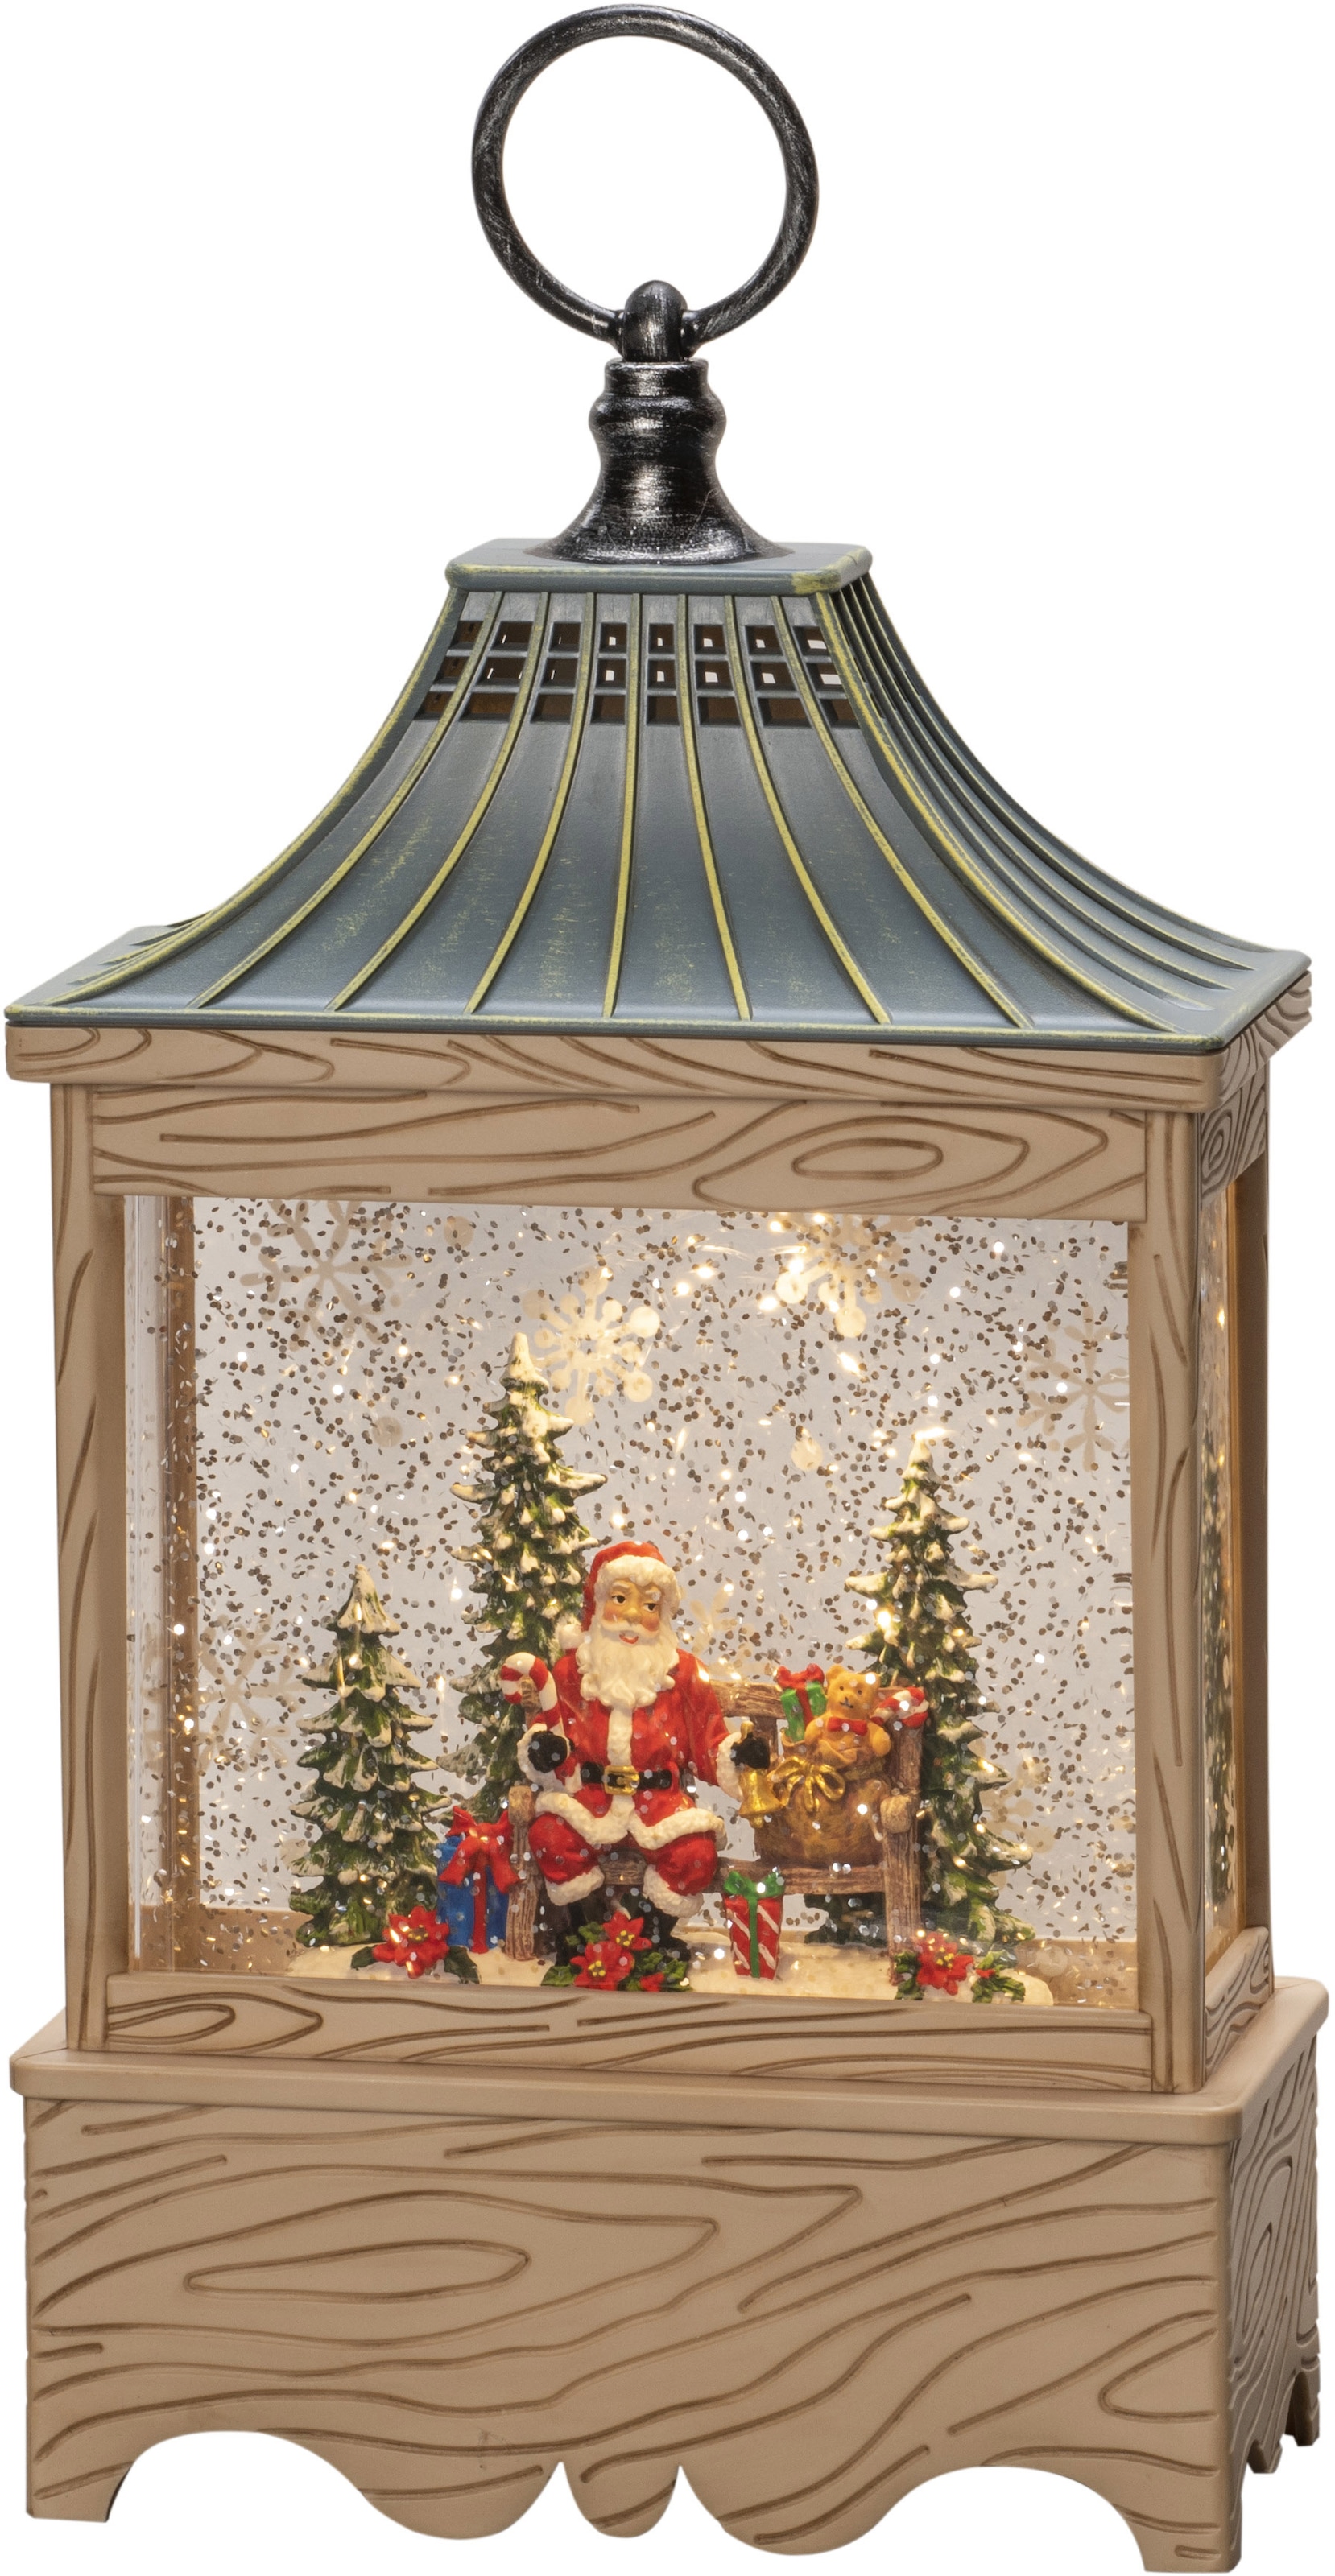 KONSTSMIDE LED Laterne »Wasserlaterne Santa kaufen OTTO naturfarben, im warm weiße Shop 1 wassergefüllt, Diode 5h Baum, Online Timer, Weihnachtsdeko«, und